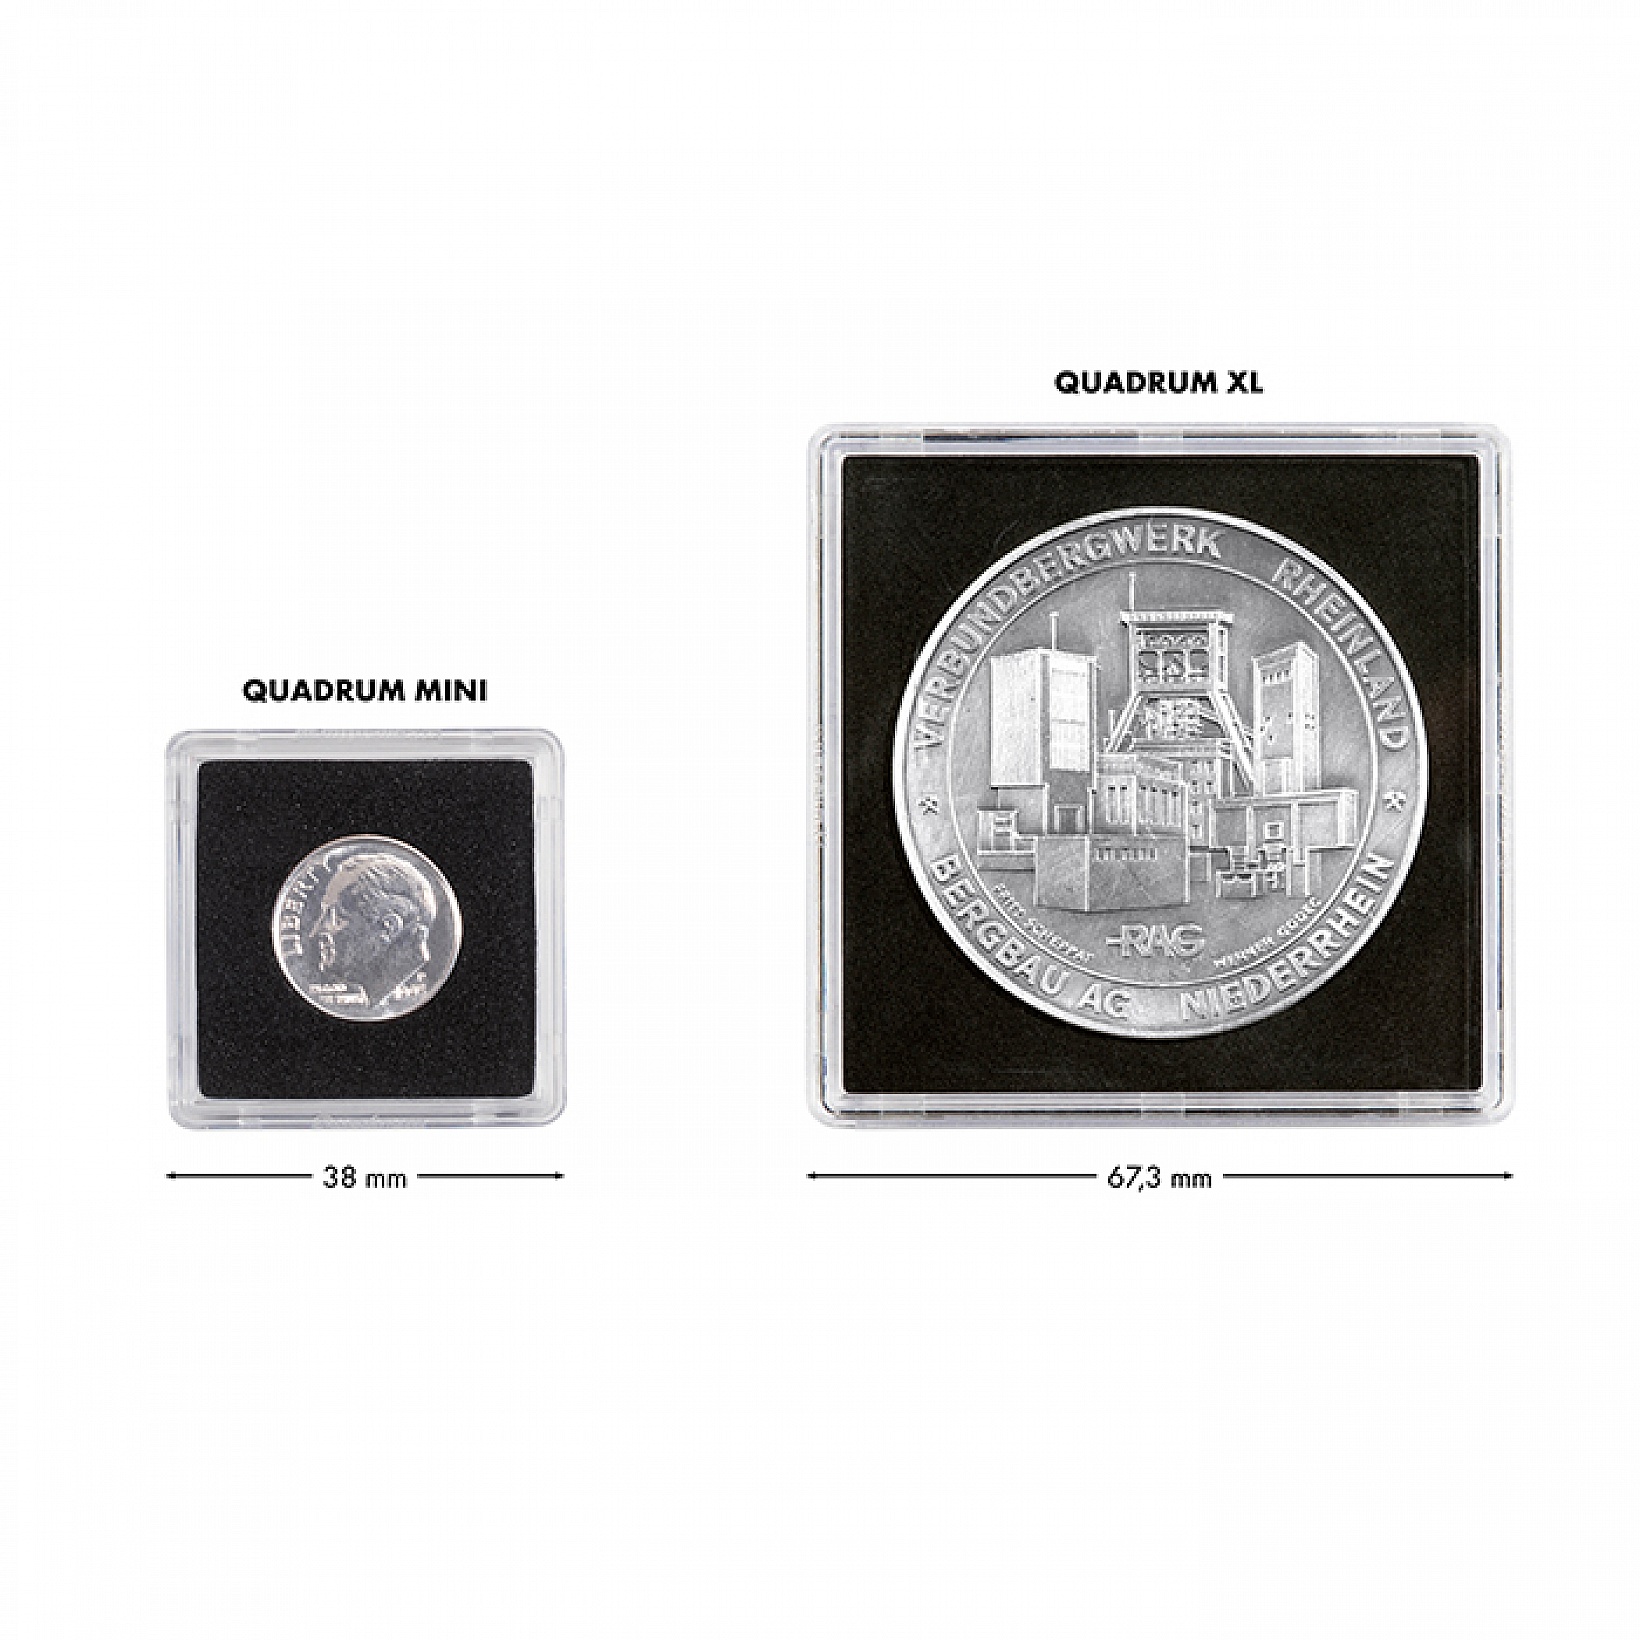 Acrylic coin etui PRISMA transparent lid for 1 QUADRUM coin capsule 